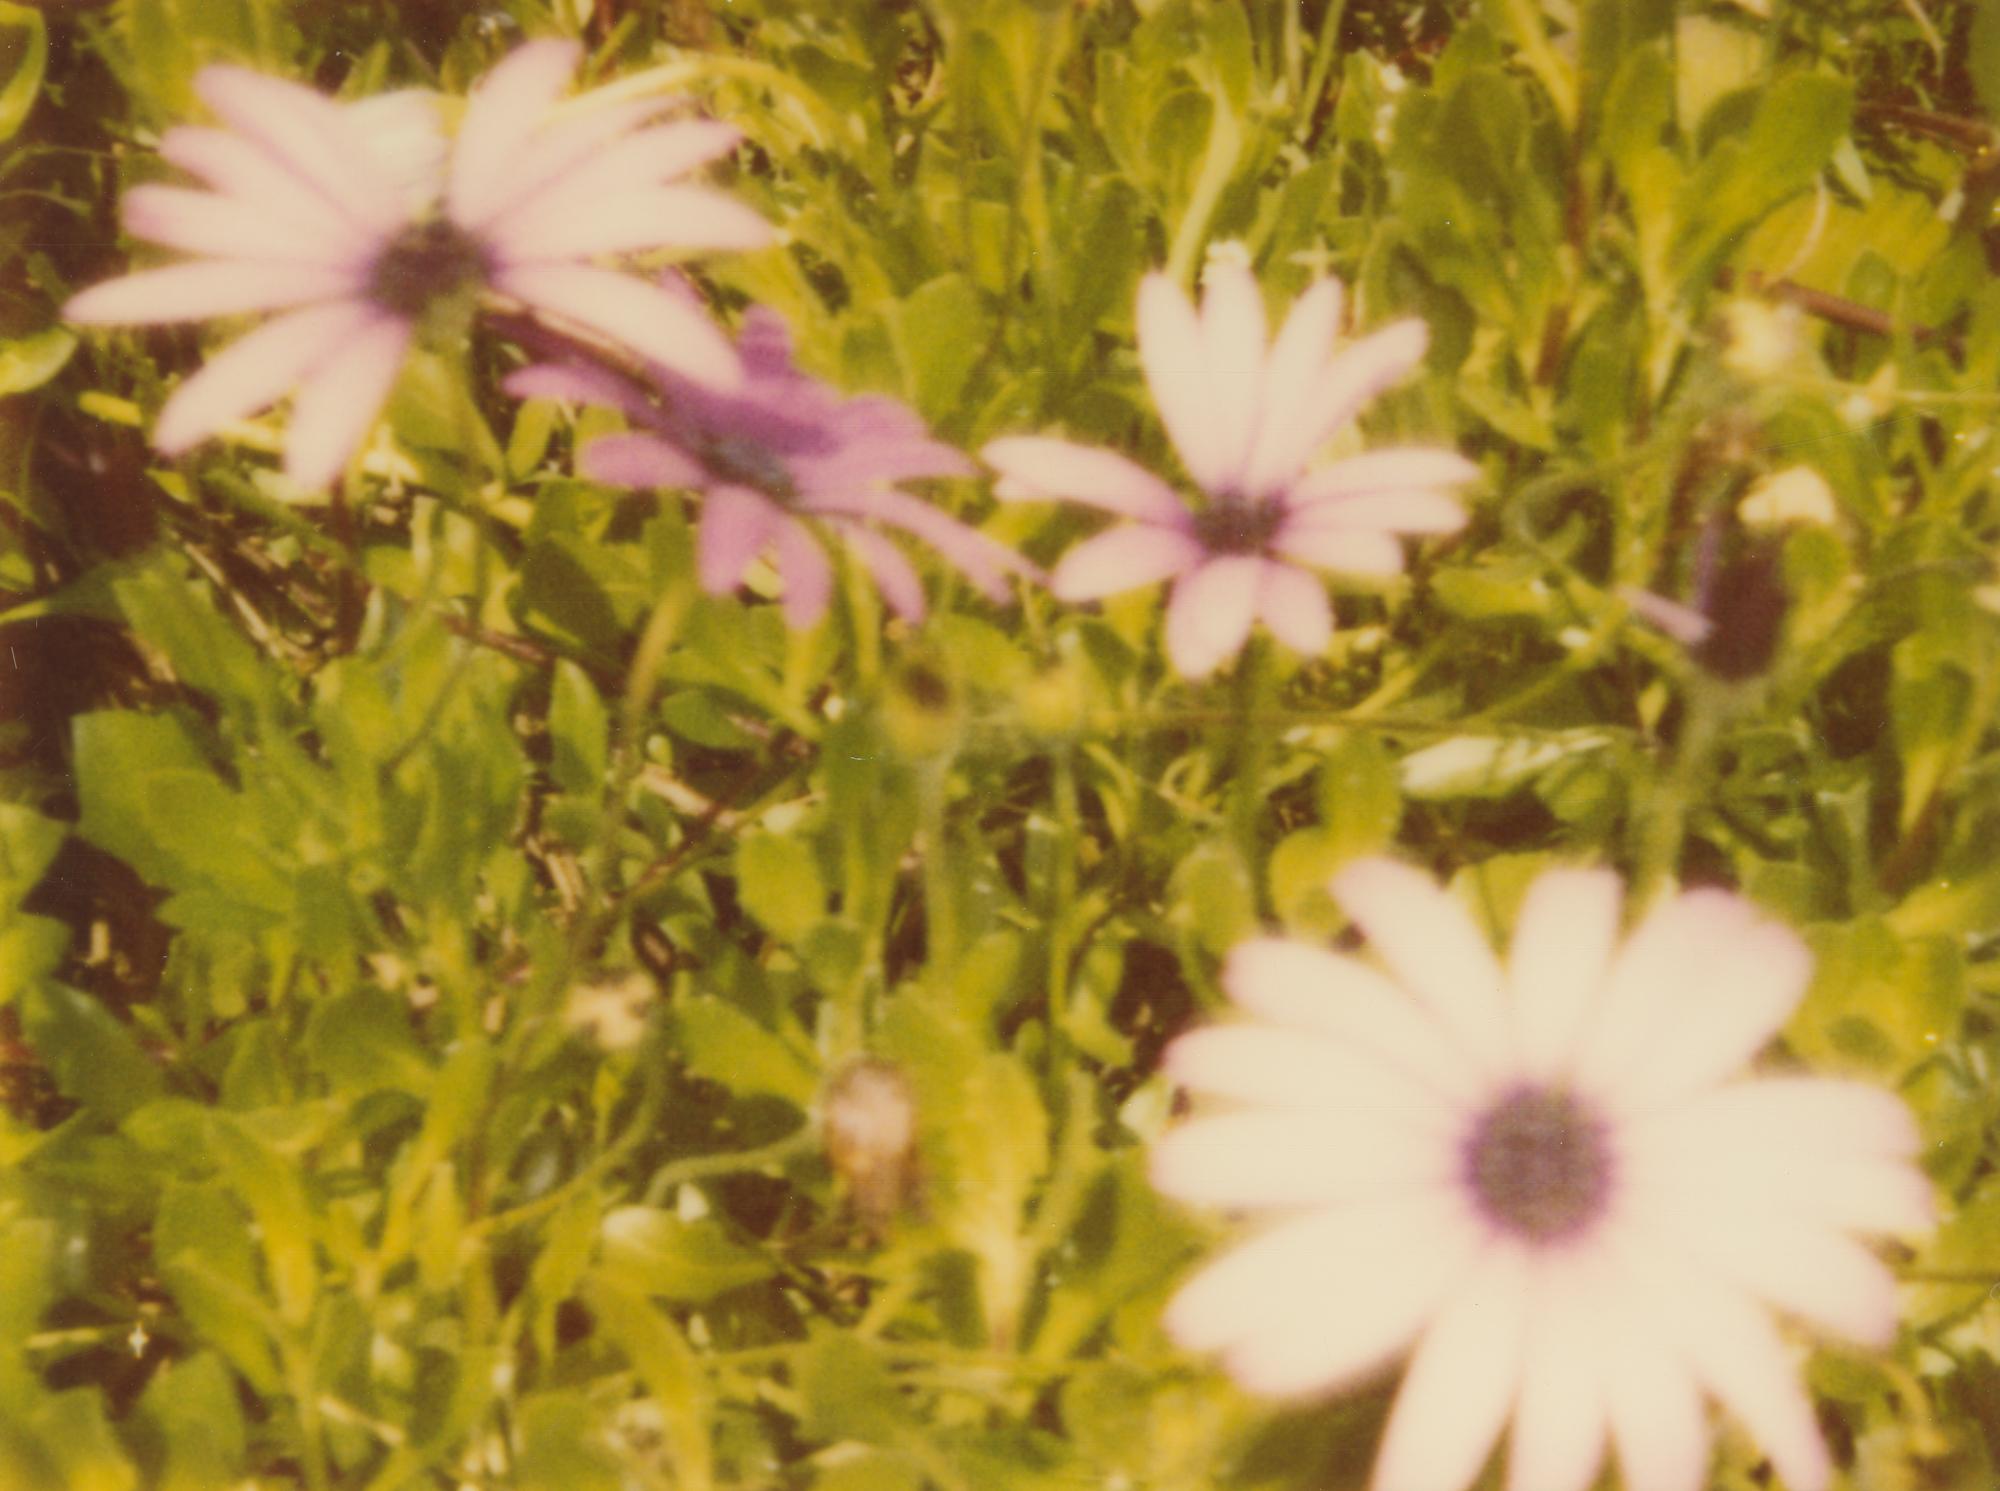 Flowers artificielles II - Contemporain, Paysage, Polaroid, expiré, XXIe siècle